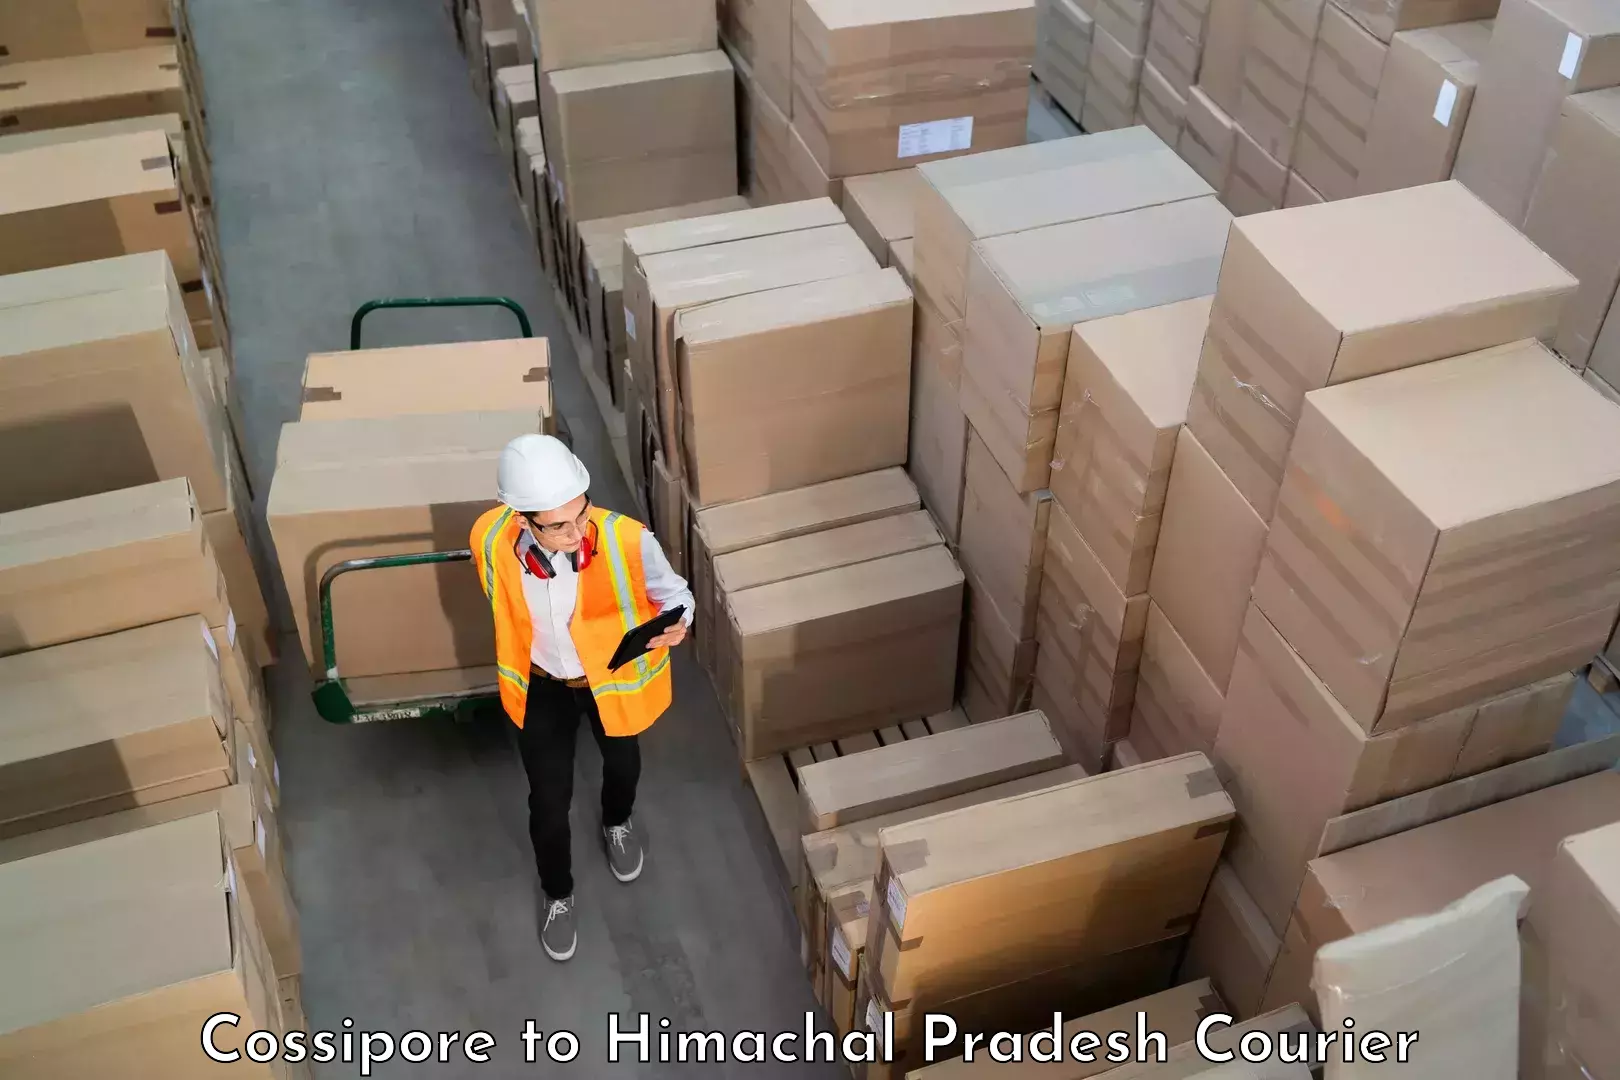 Luggage delivery providers Cossipore to Kunihar